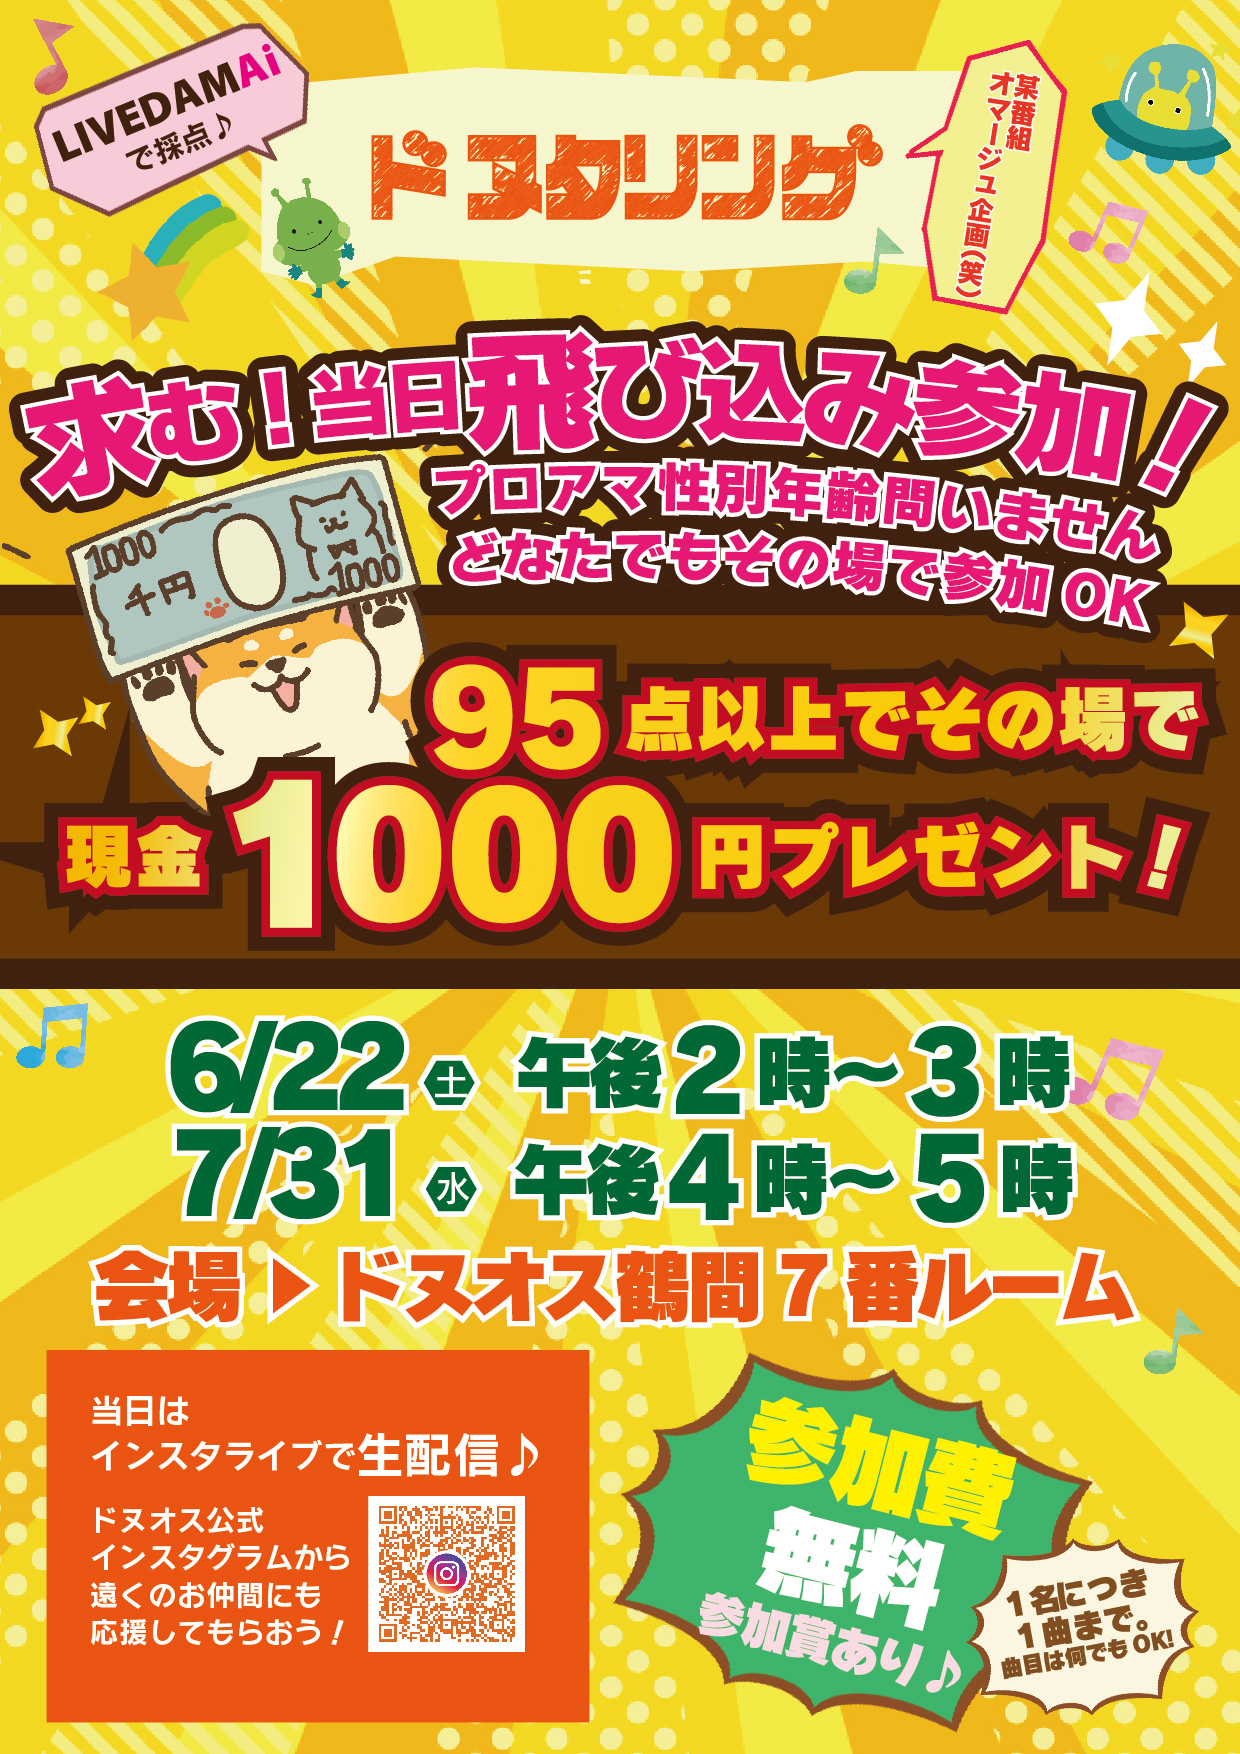 ドヌオス賞金企画!95点以上で千円GET!